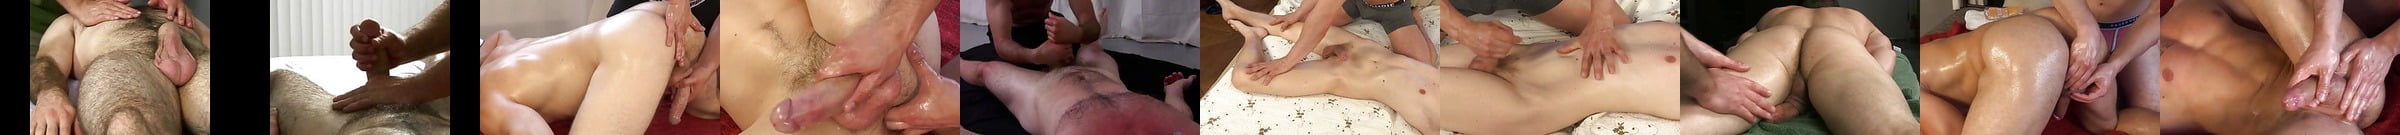 Fourhanded Massage Gay Amateur Porn Video 1f XHamster XHamster